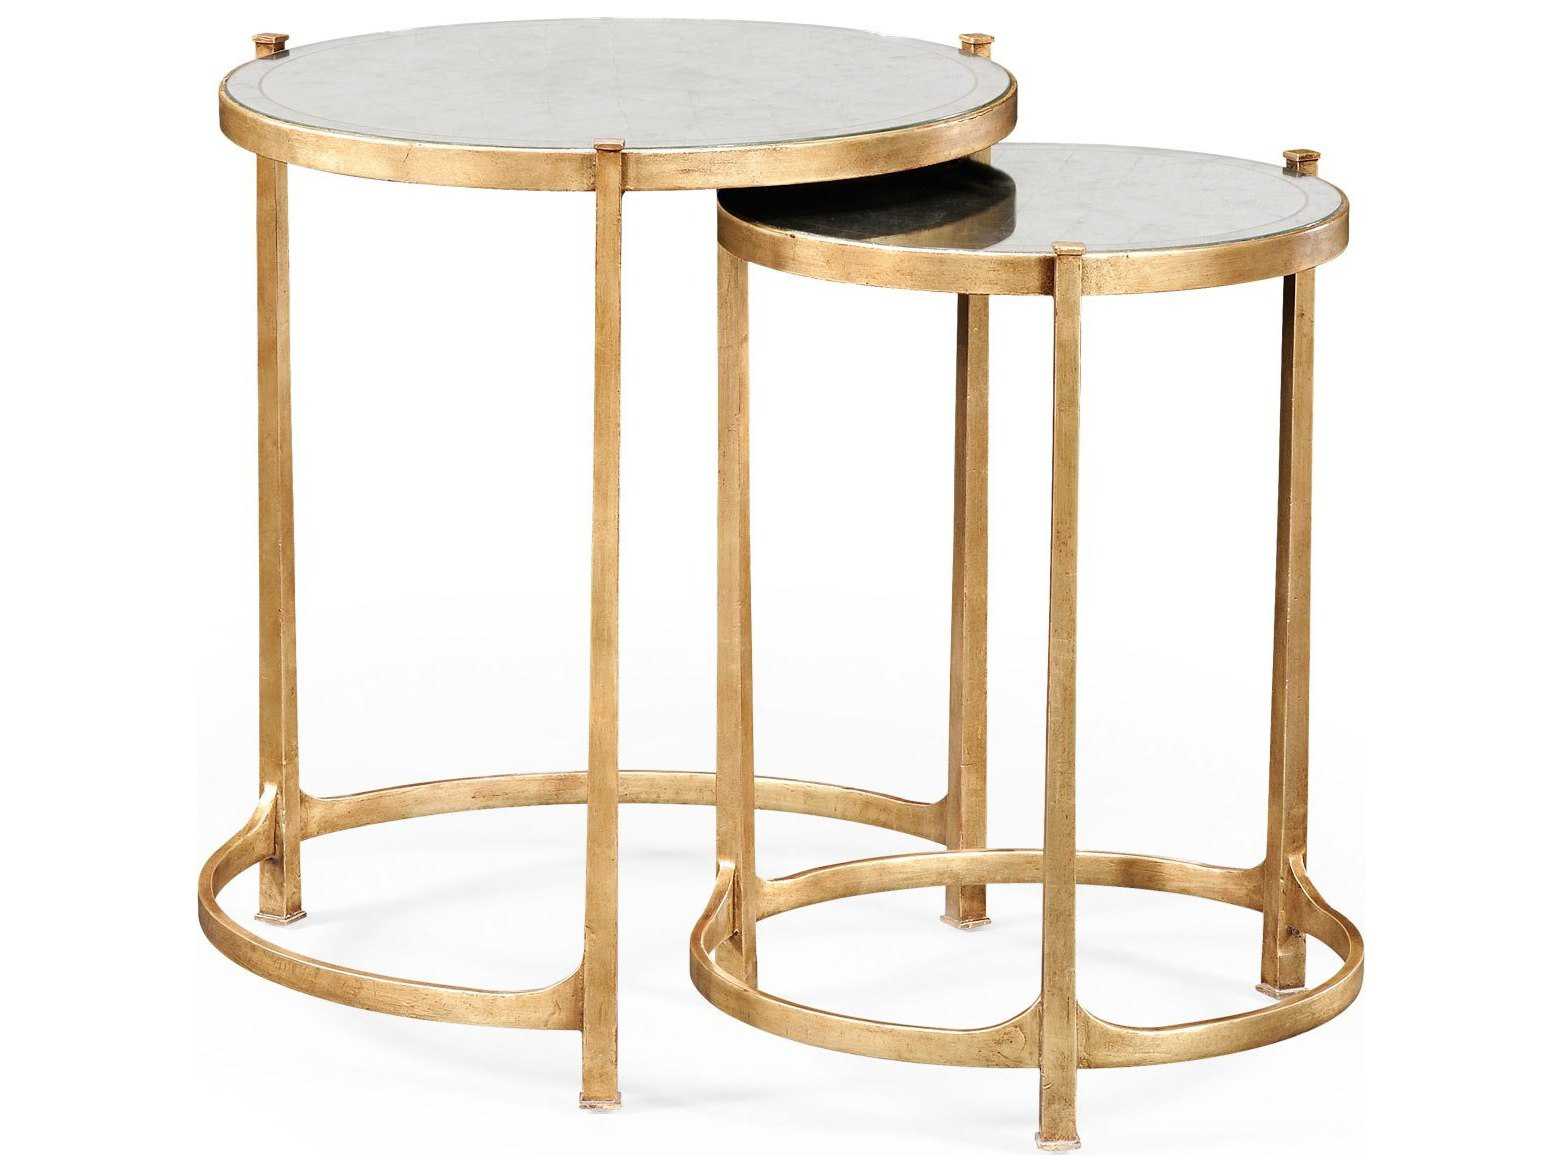 Сет столиков. Журнальный столик Side Table Crane Gold 2300159. Кофейный столик Gilbert Side Table Gold. Столик приставной Miami золотой. Приставной столик uilc14782.